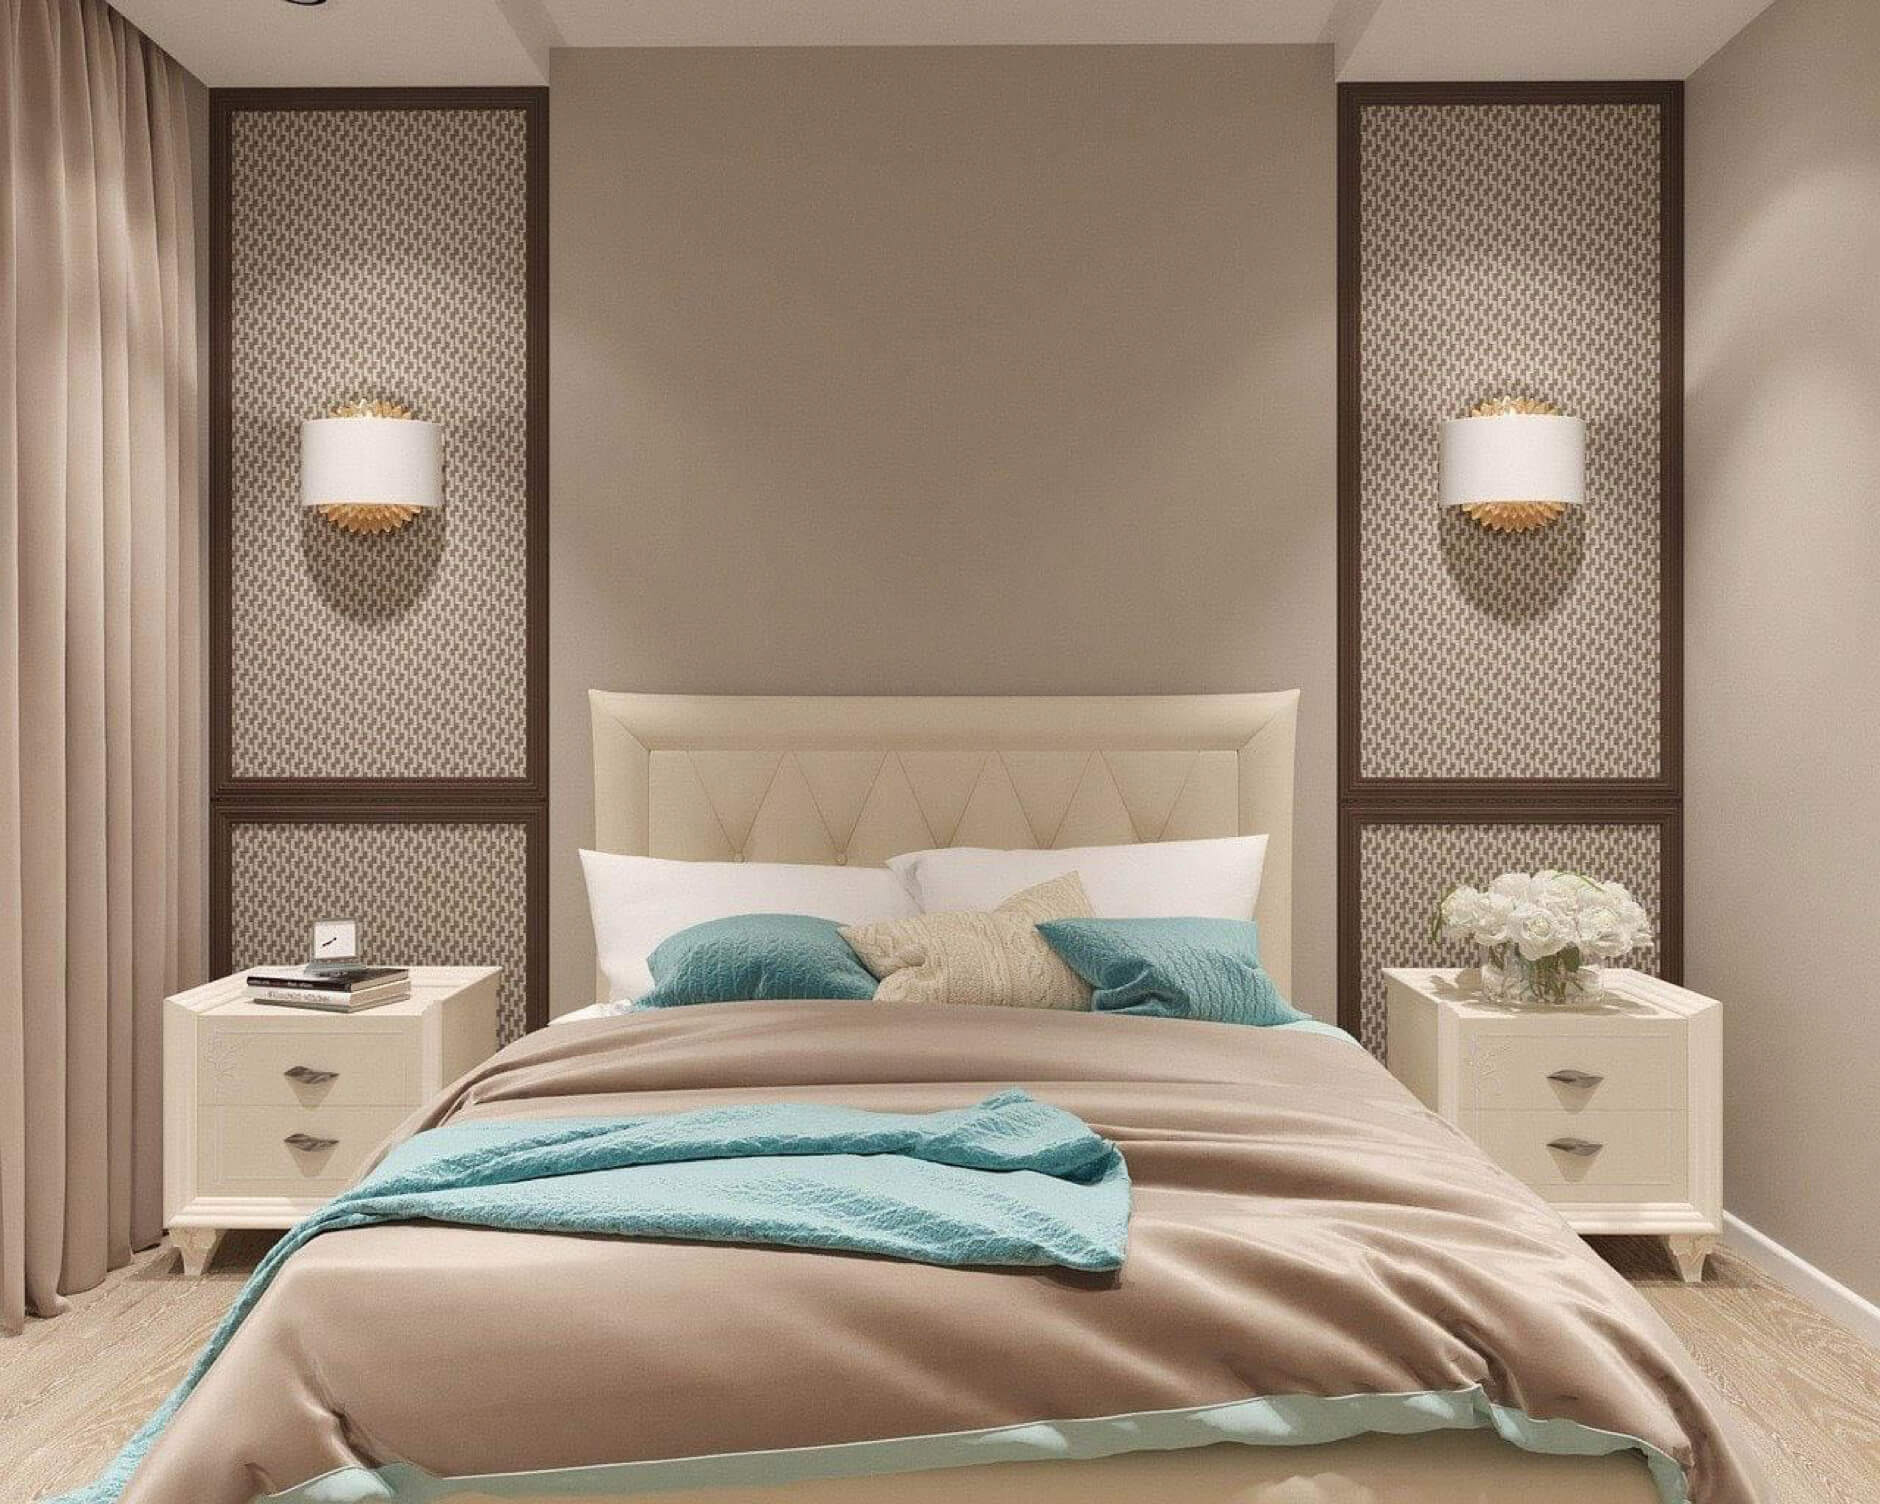 Trang trí phòng ngủ cho nữ với các gam màu trung tính